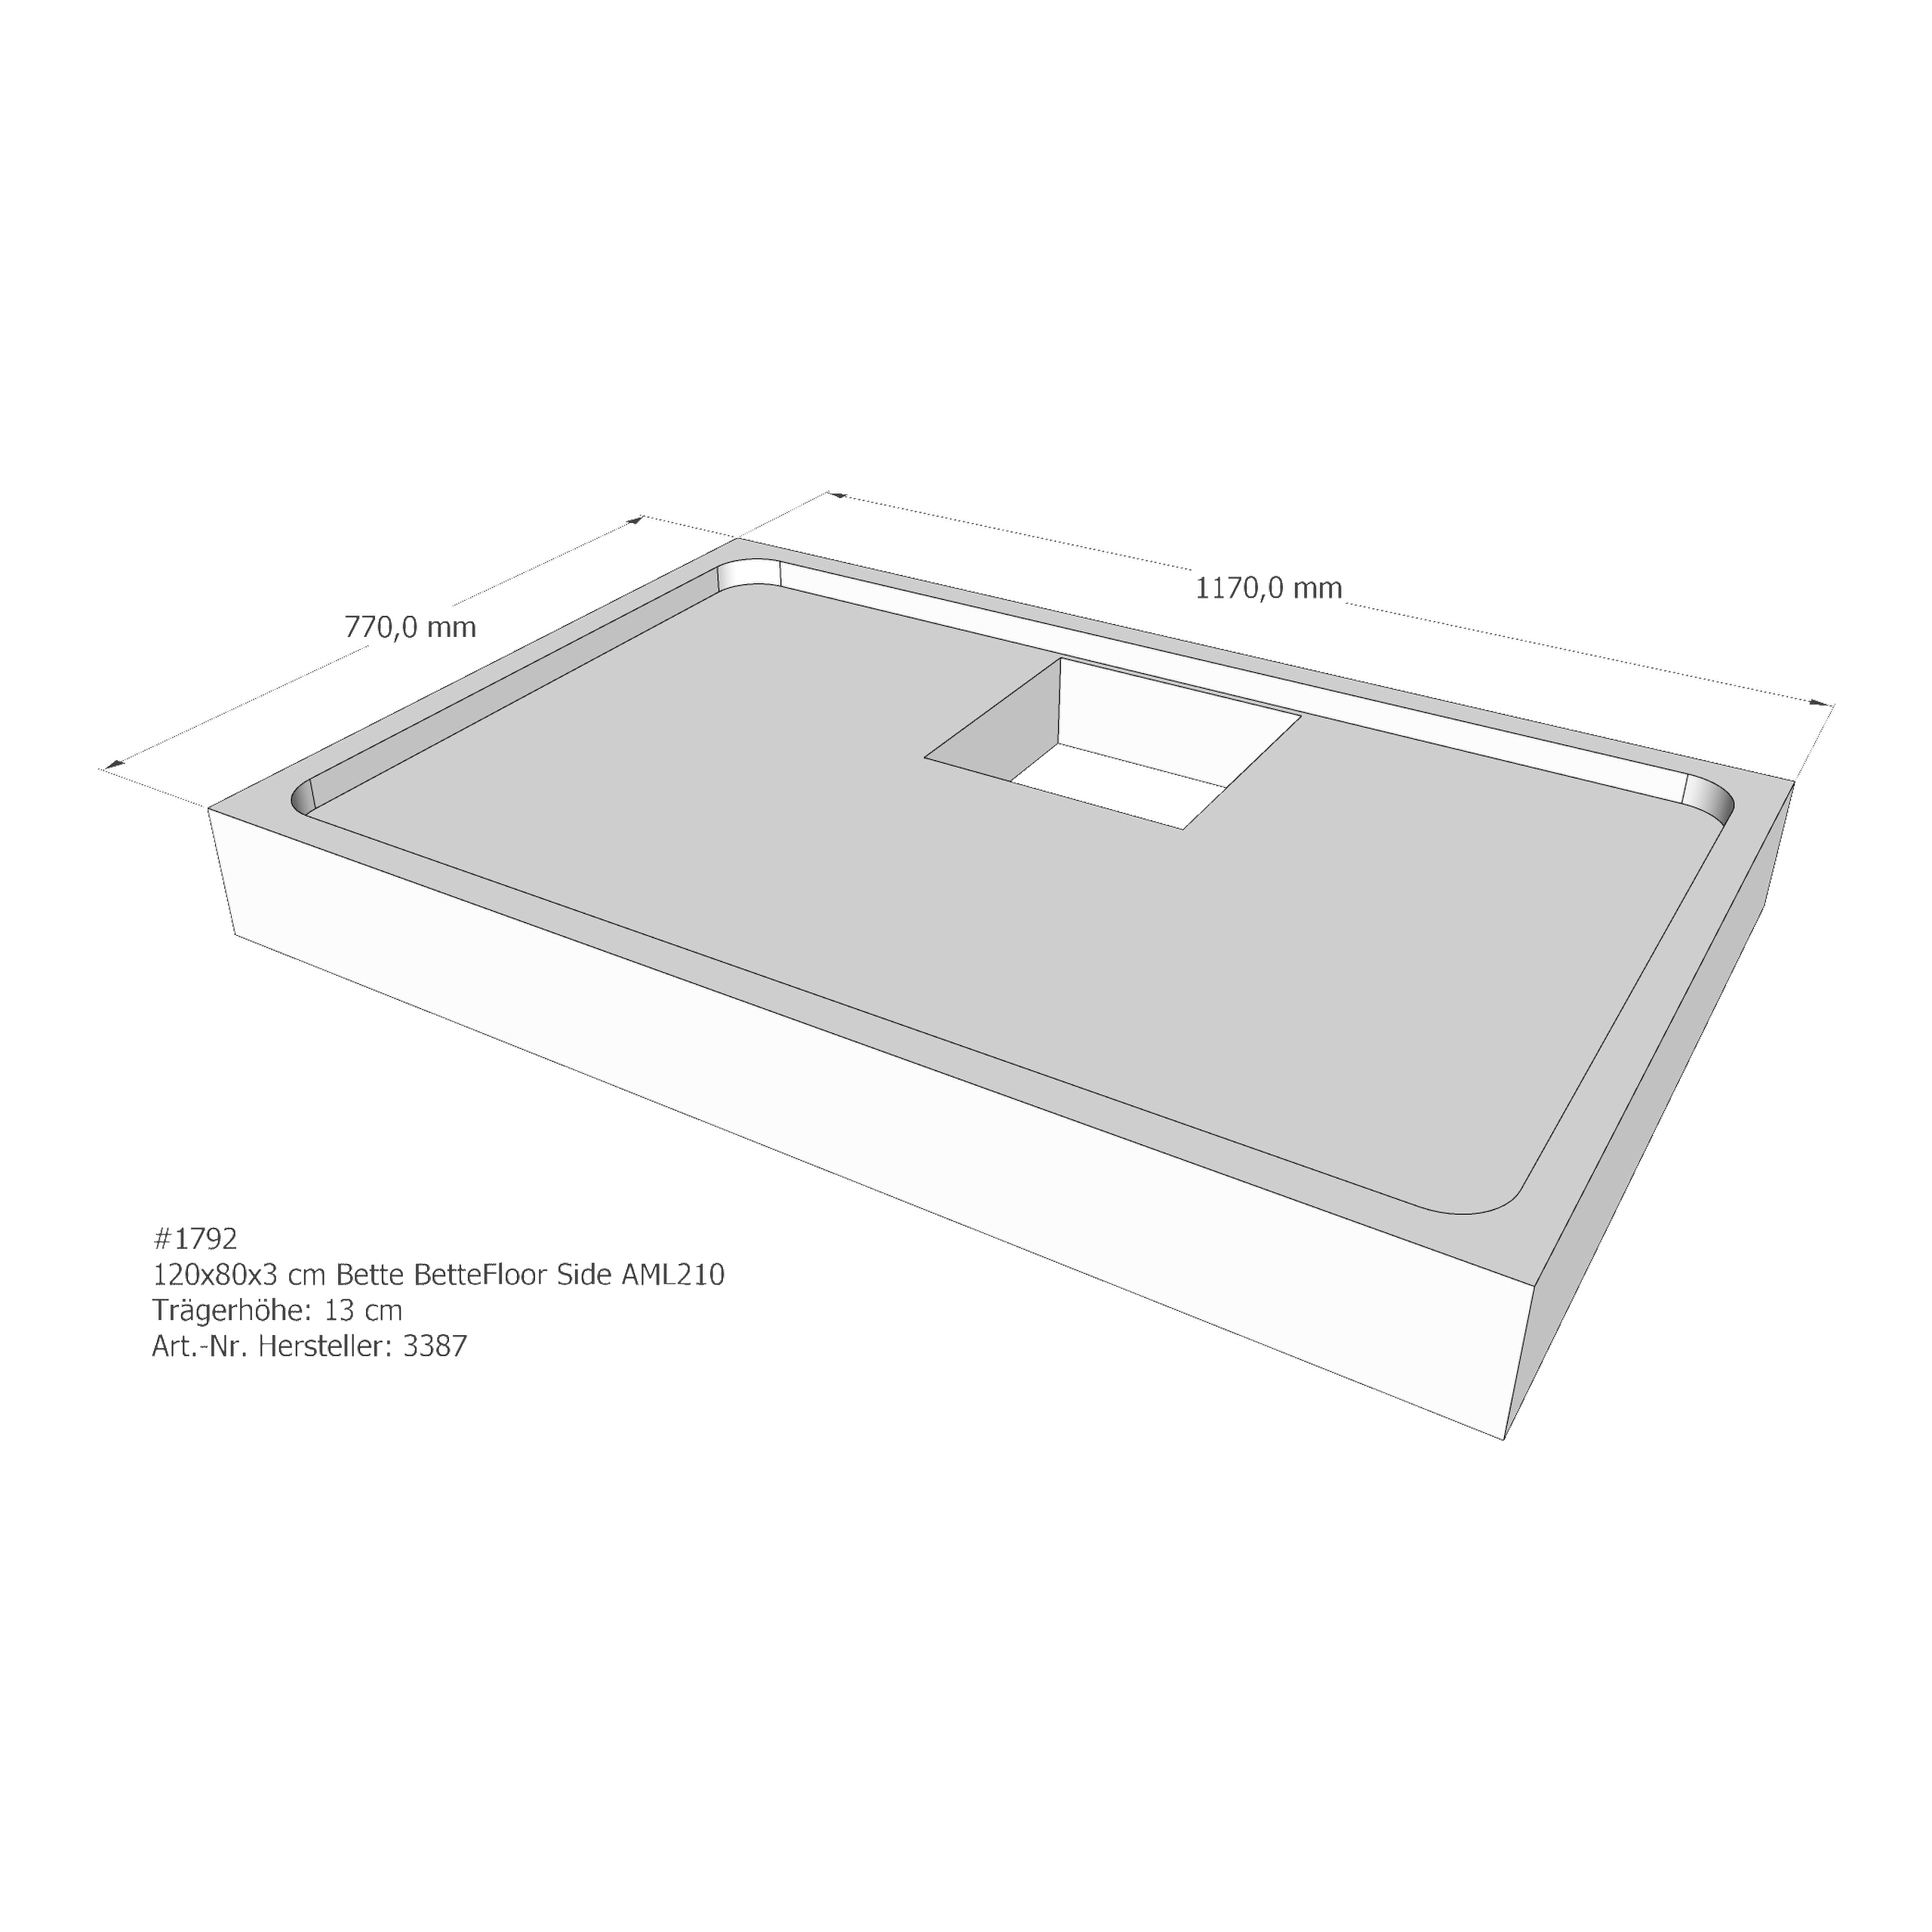 Duschwannenträger Bette BetteFloor Side 120x80x3 cm AML210